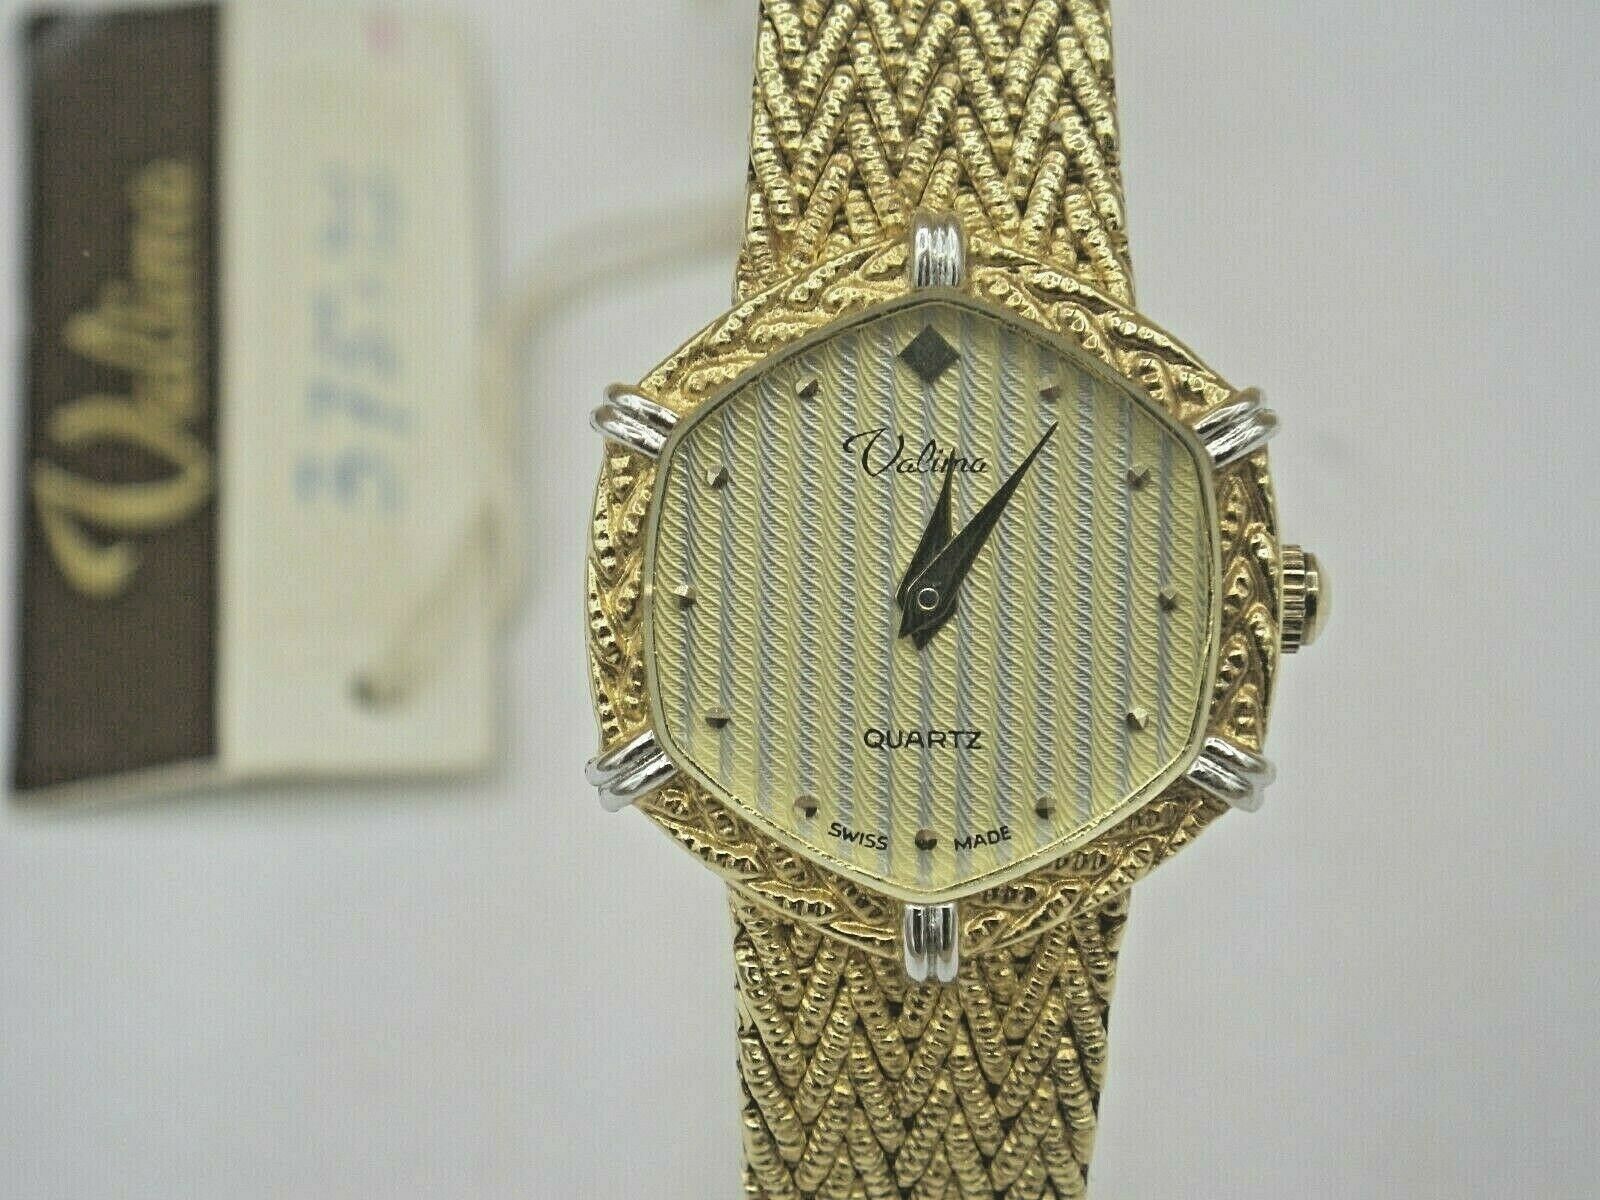 Clocks and Watches - Gravure Renaud Inc.